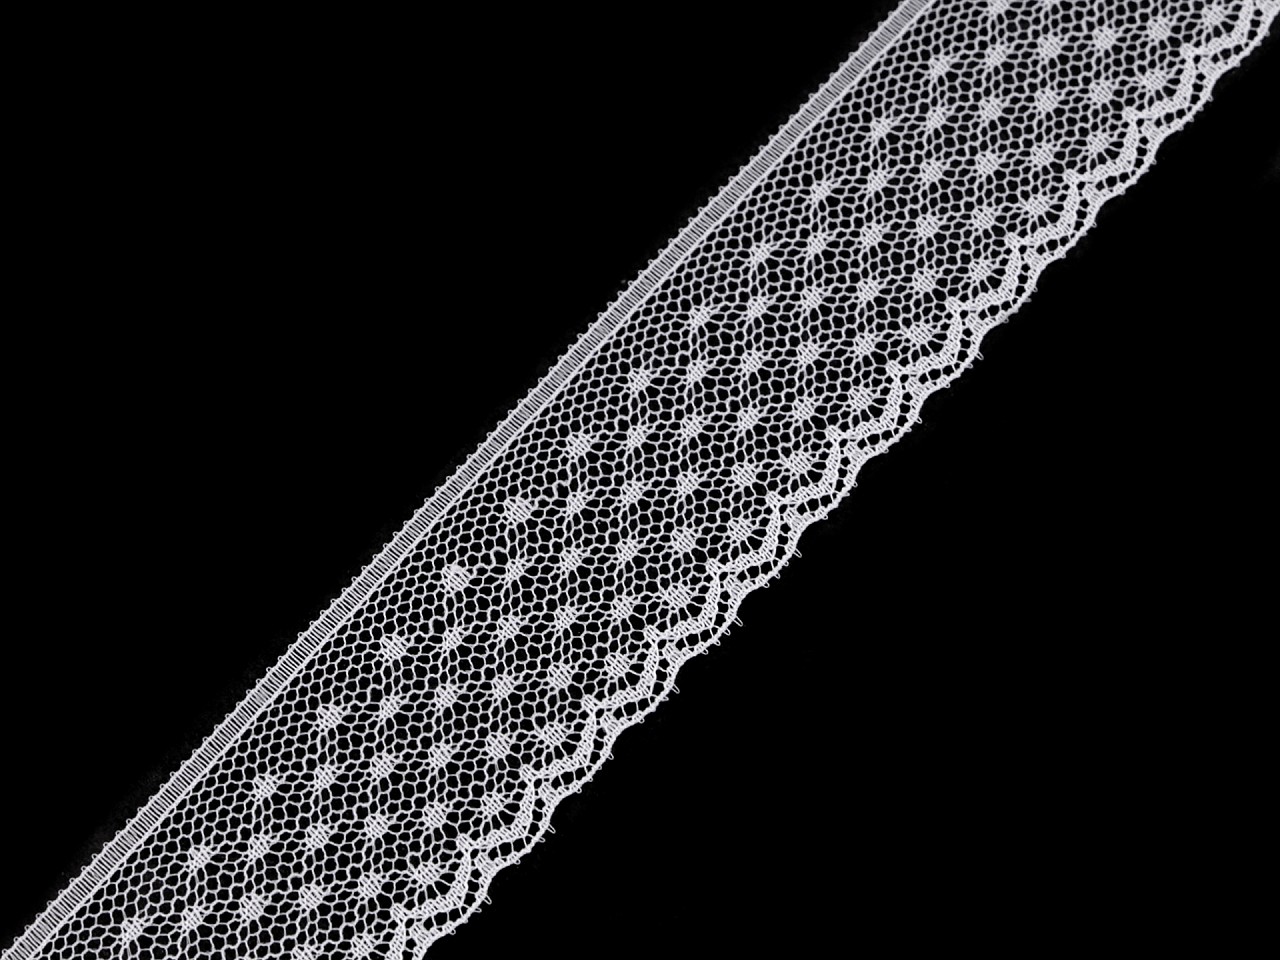 Textillux.sk - produkt Silónová čipka šírka 33 mm